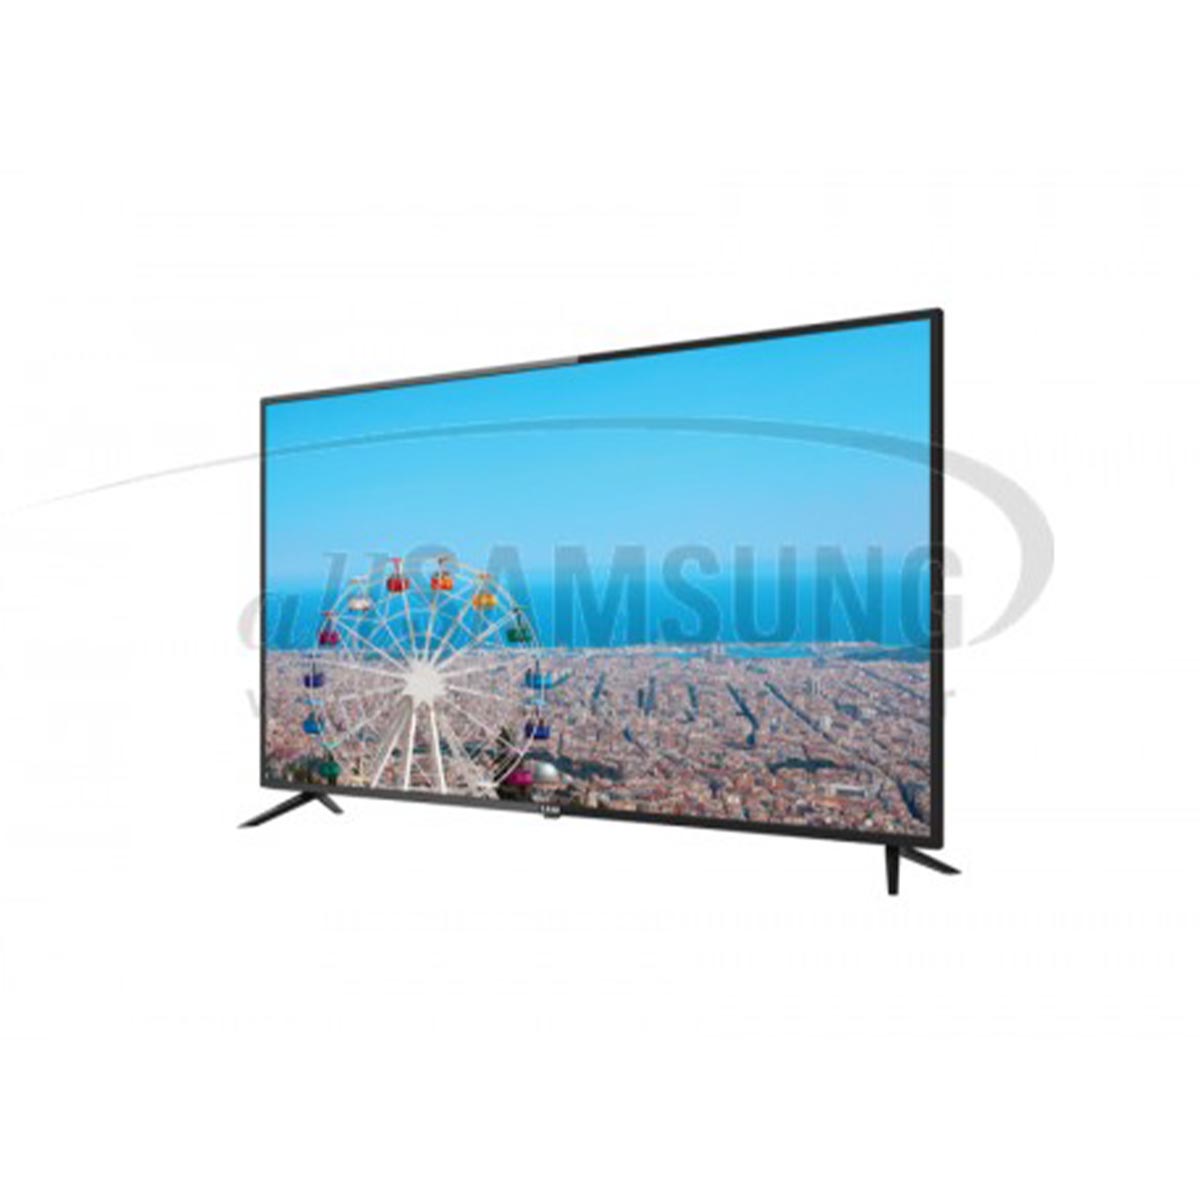 تلویزیون ال ای دی سام الکترونیک مدل UA50T5350TH سایز 50 اینچ | بازار پخش